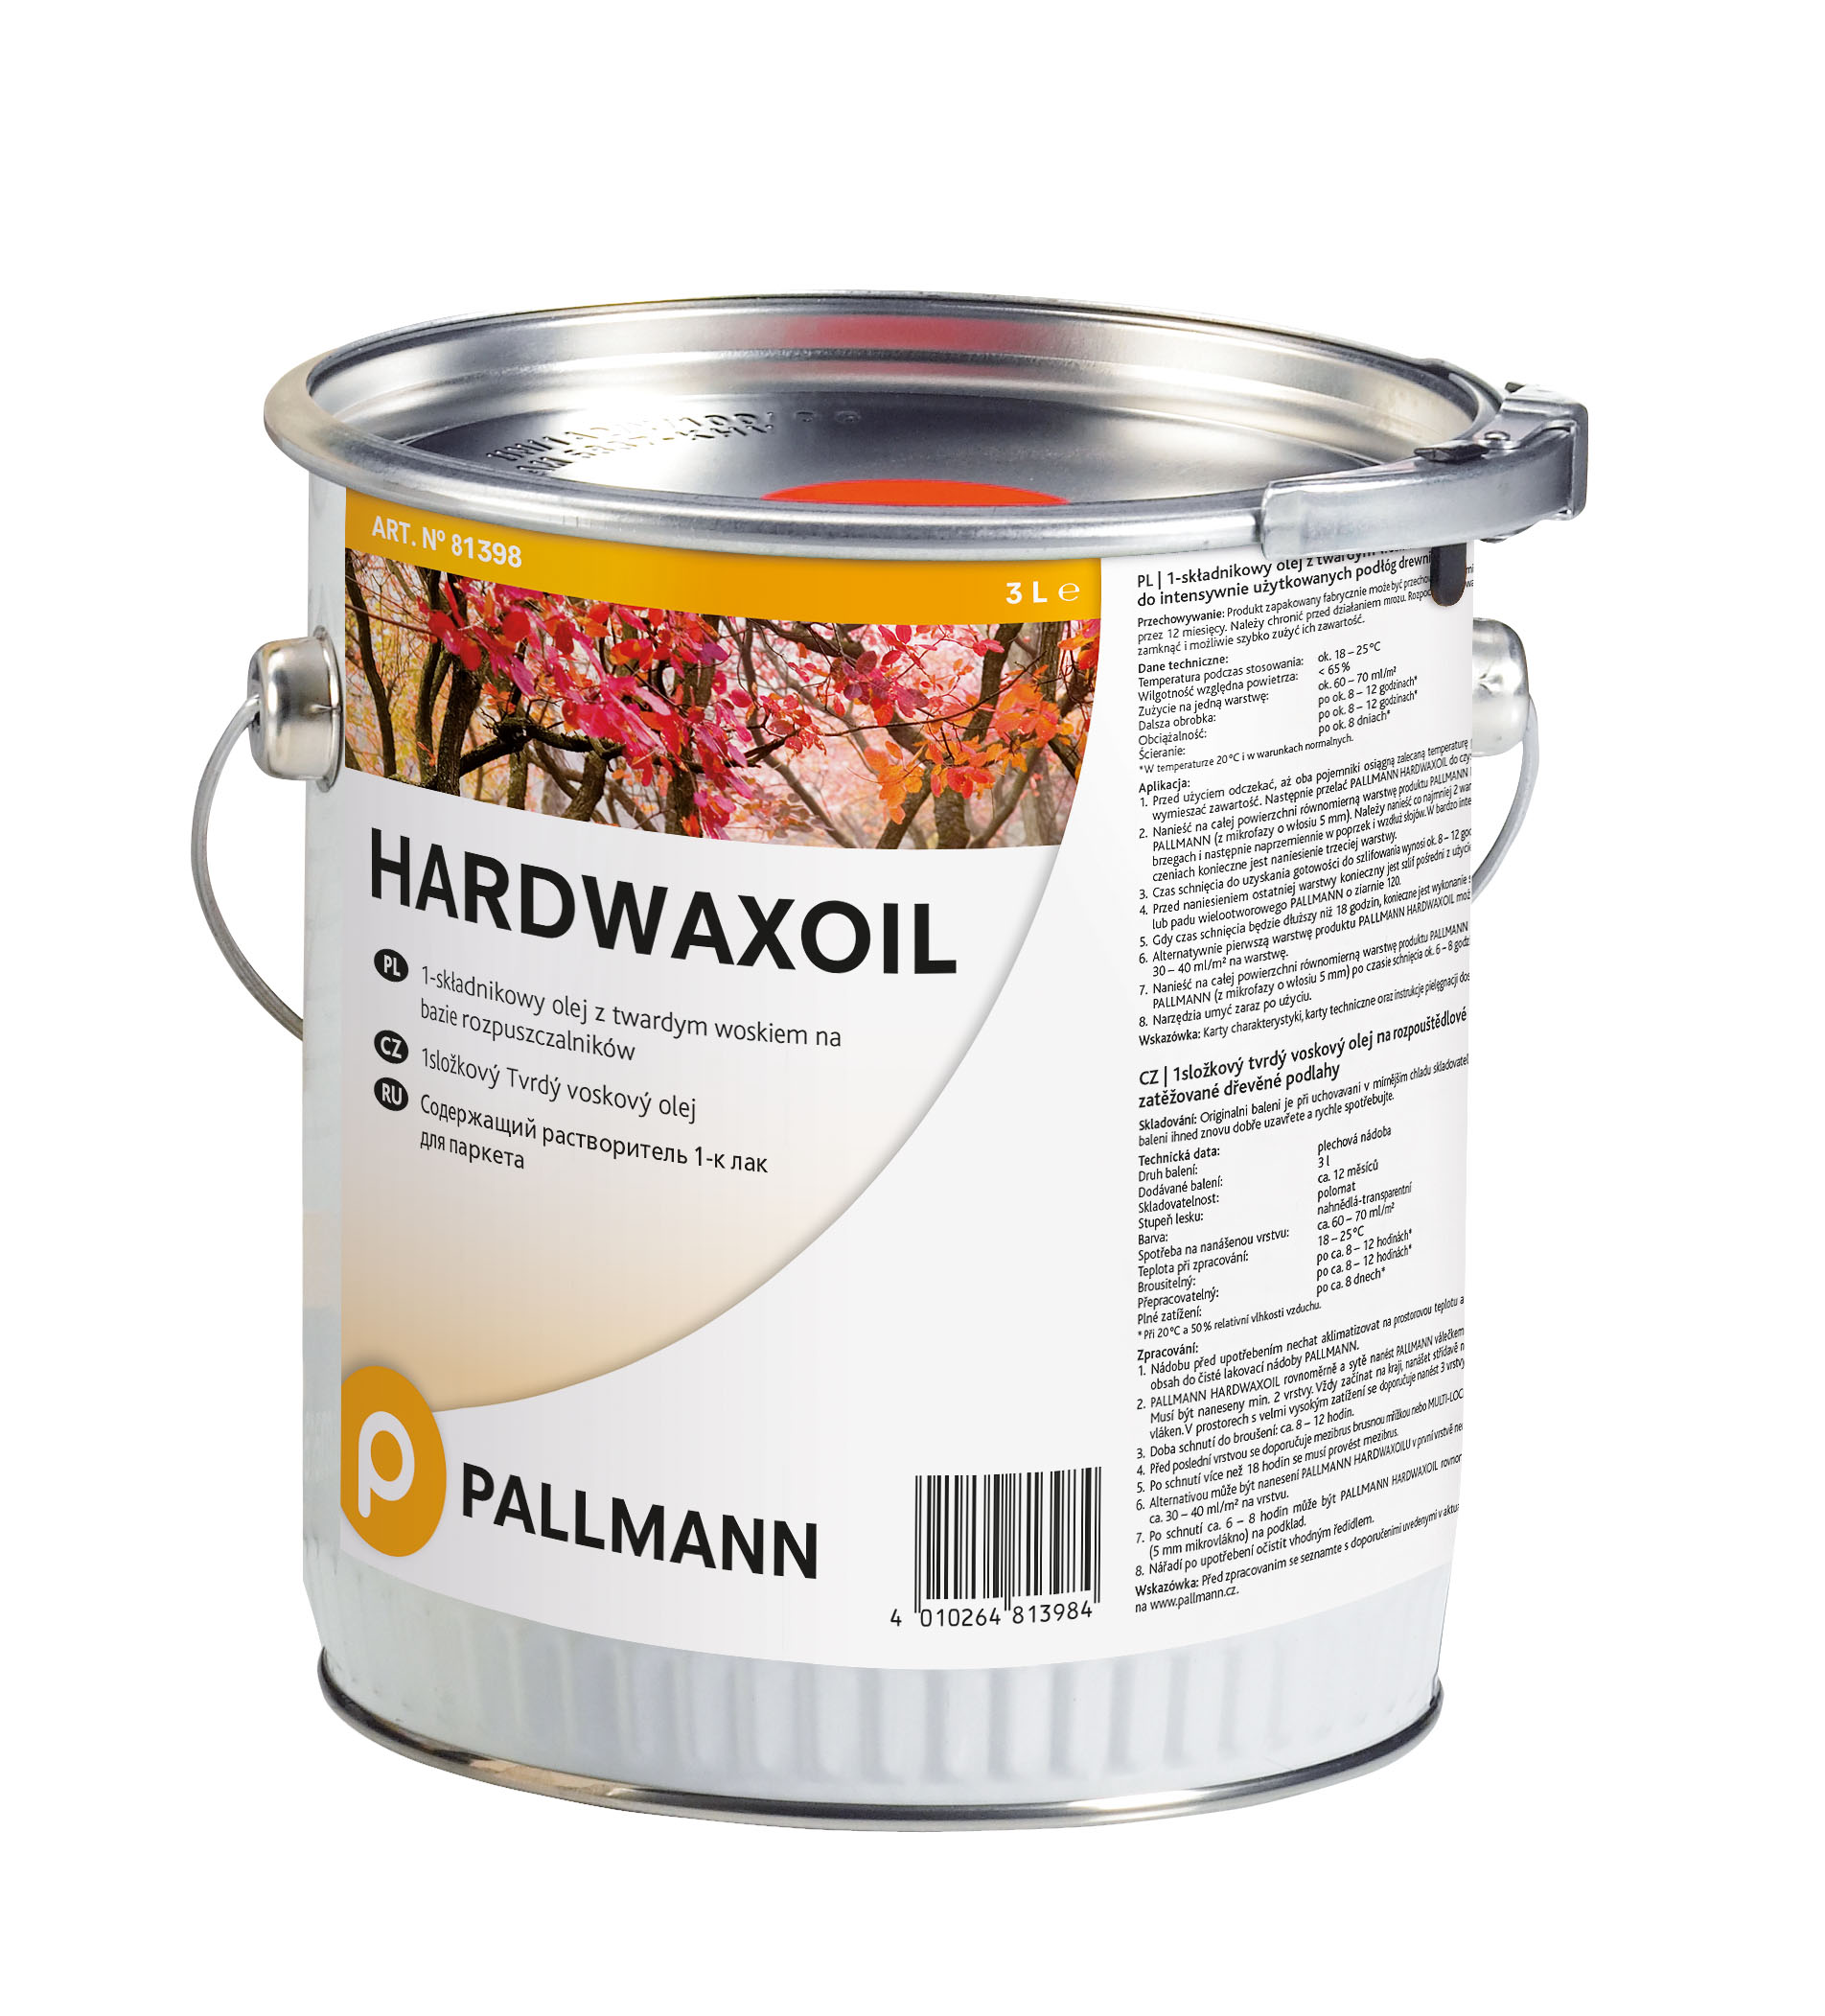 Tvrdý voskový olej PALLMANN HARDWAXOIL - akce